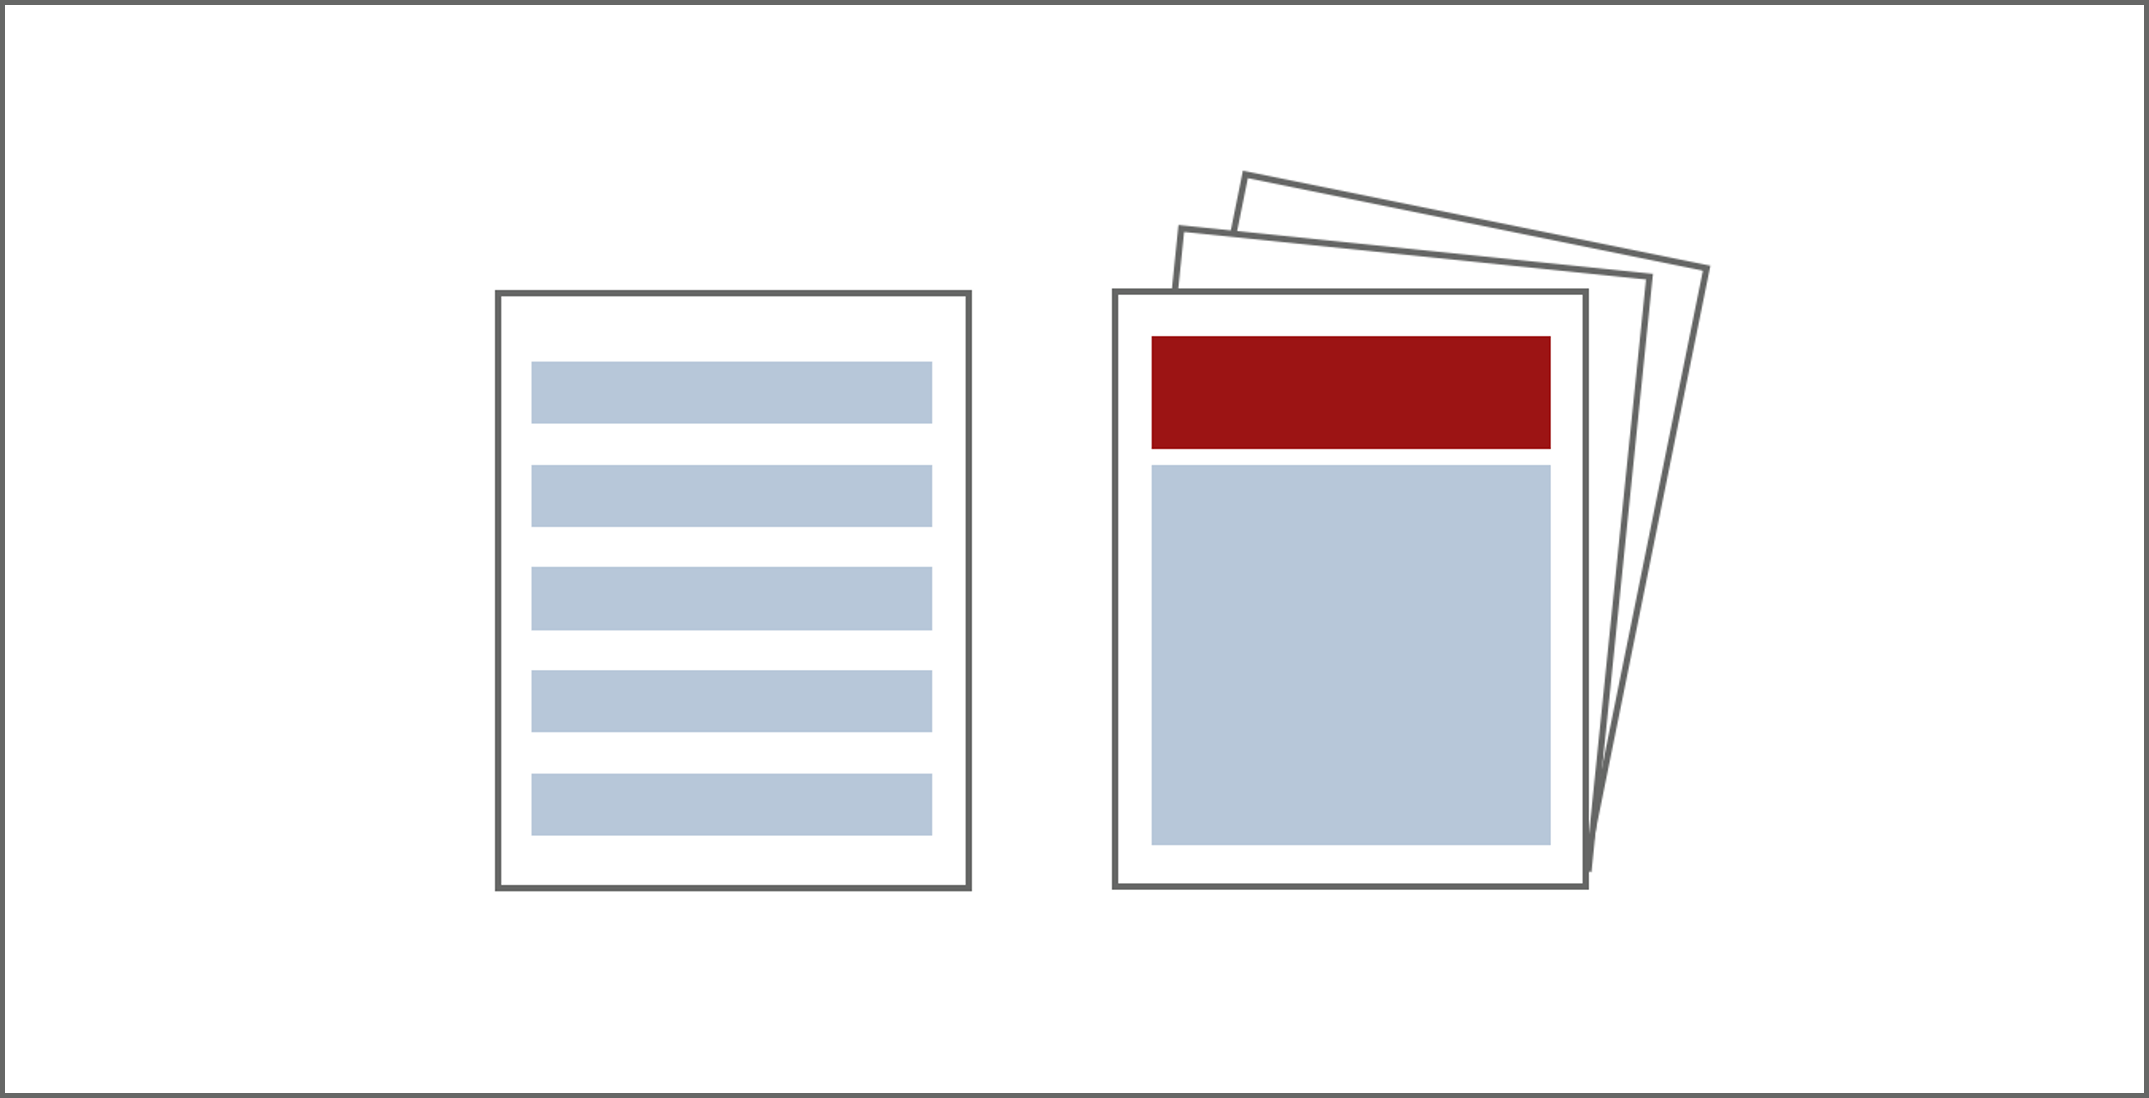 zwei stilisierte Dokumente: ein einzelnes Blatt mit angedeuteten Text, der aus mehreren Rechteck-Balken besteht, und ein mehrseitiges Dokument, auf dessen Titel sich ein schmales rotes Rechteck und ein großes hellblaues Rechteck befindet